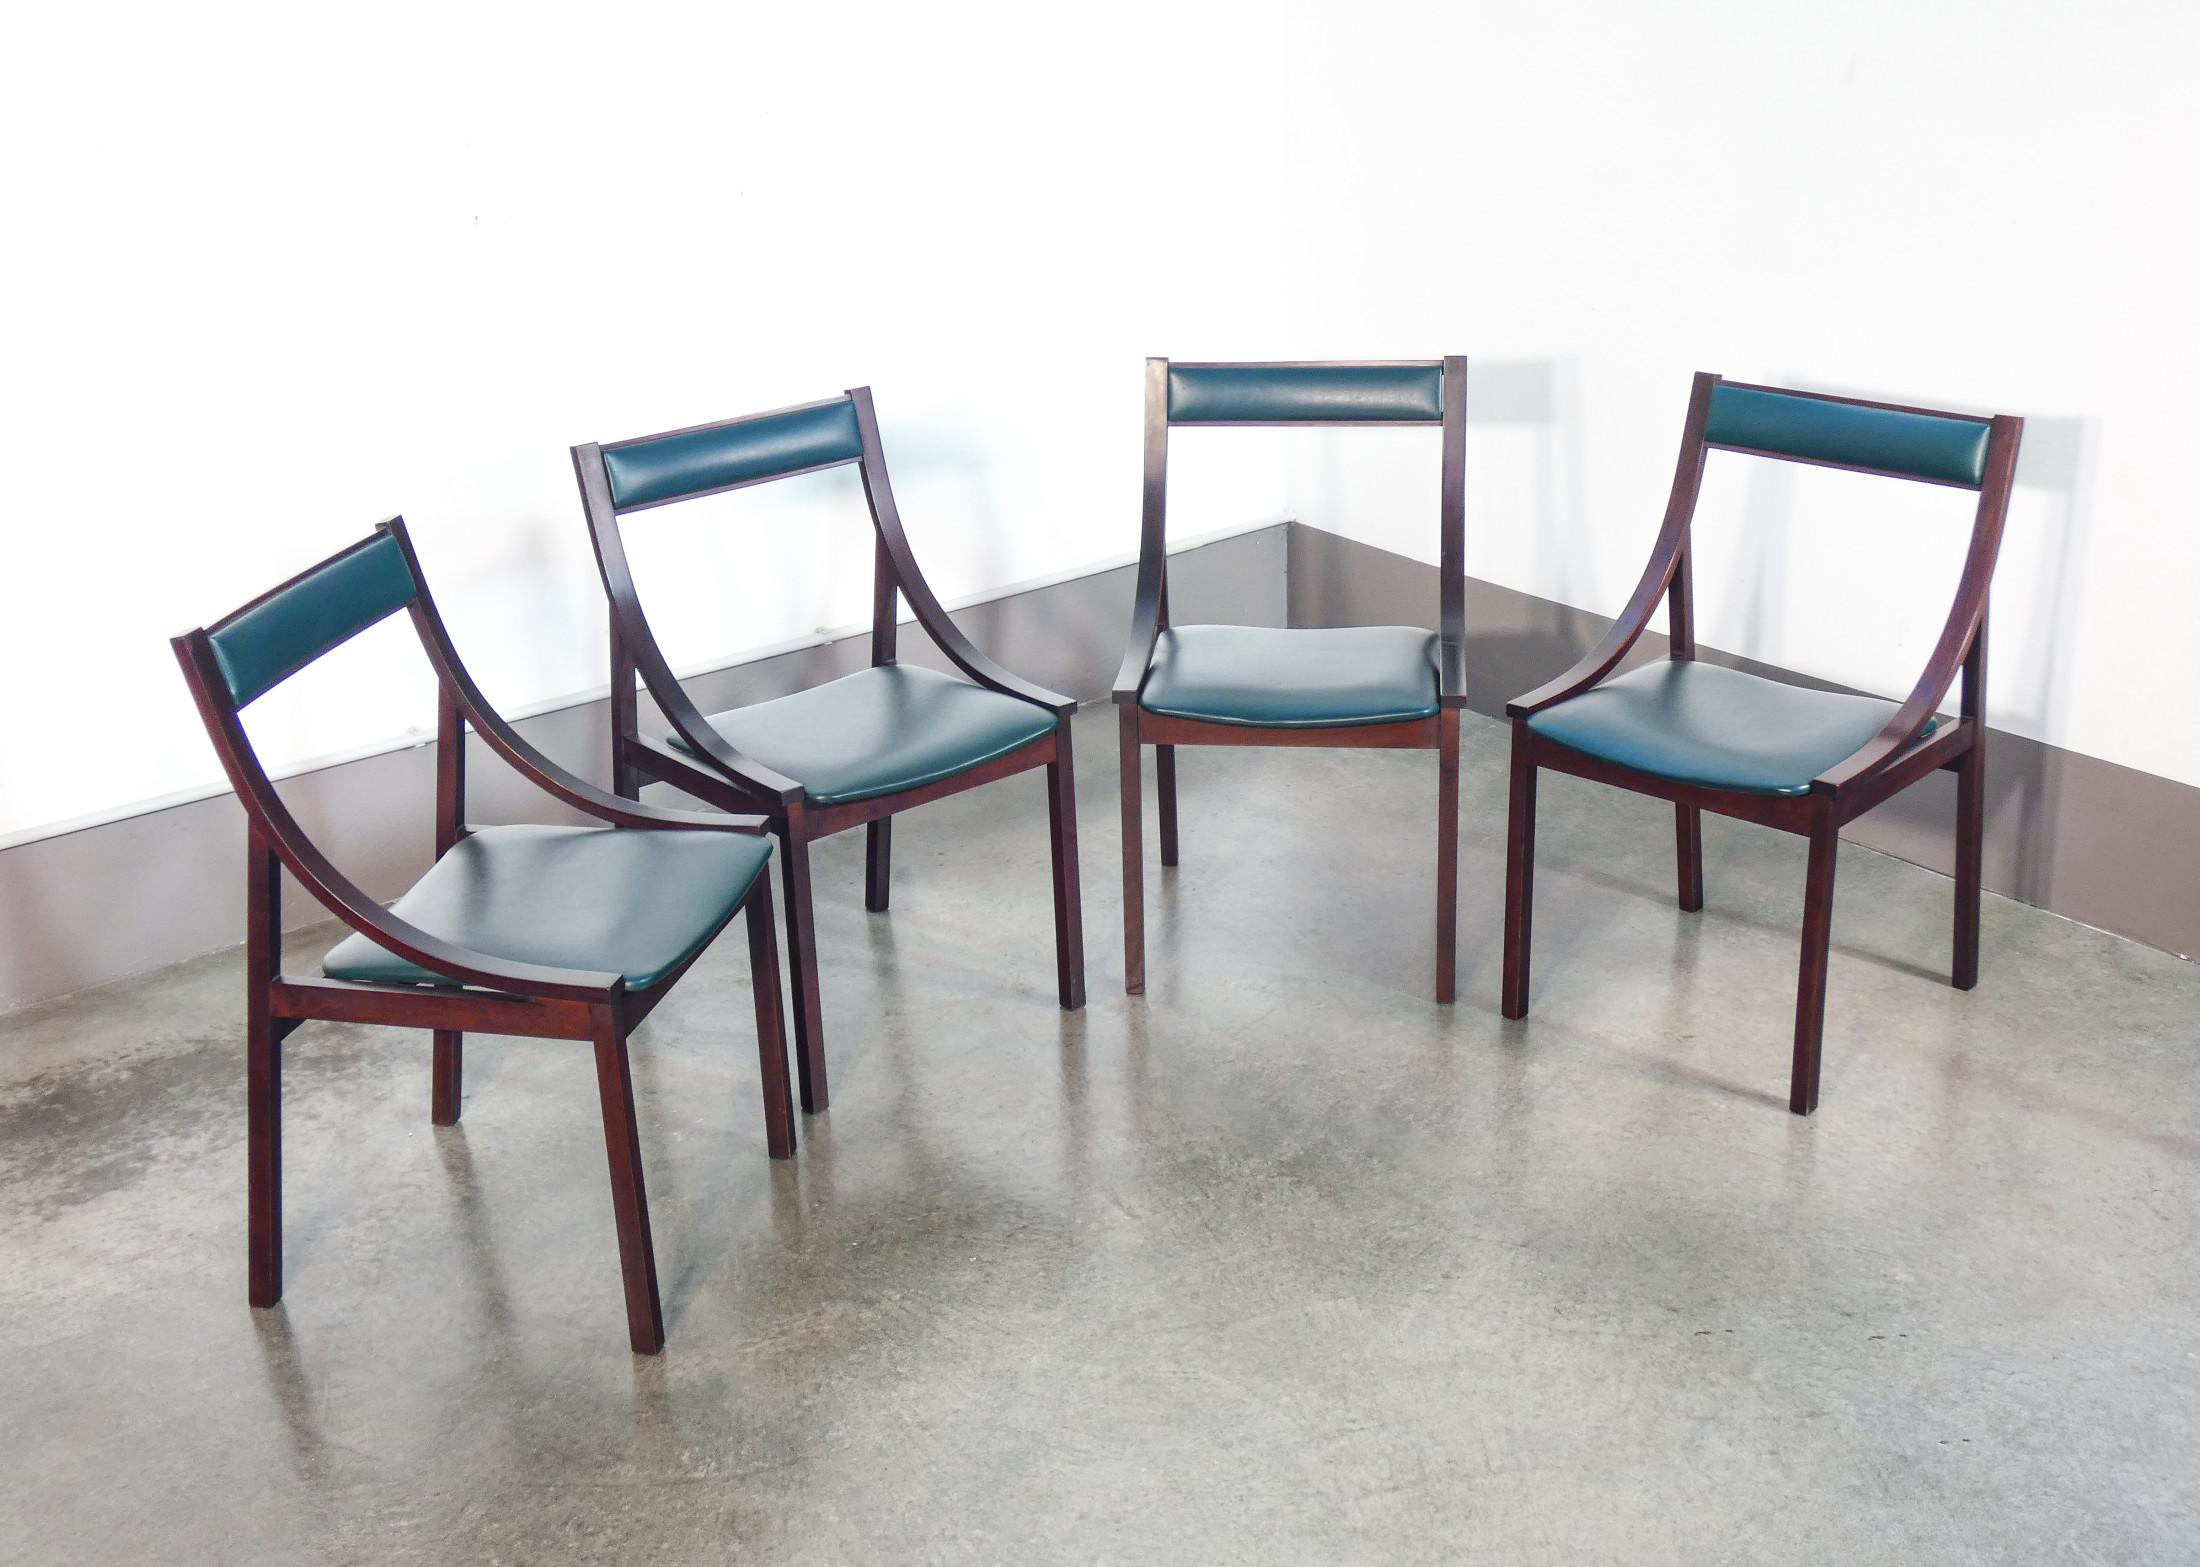 Vier Stühle
entwurf Carlo DE CARLI
für SORMANI.
Italien, 60er Jahre

URSPRUNG
Italien

PERIOD
1960s

DESIGNER
Carlo DE CARLI
(1910-1999)

MARK
Sormani

MODELL
Vier Esszimmerstühle

MATERIALIEN
Holz

ABMESSUNGEN
T 51 x B 47 x H 80 cm
sitzfläche: 42